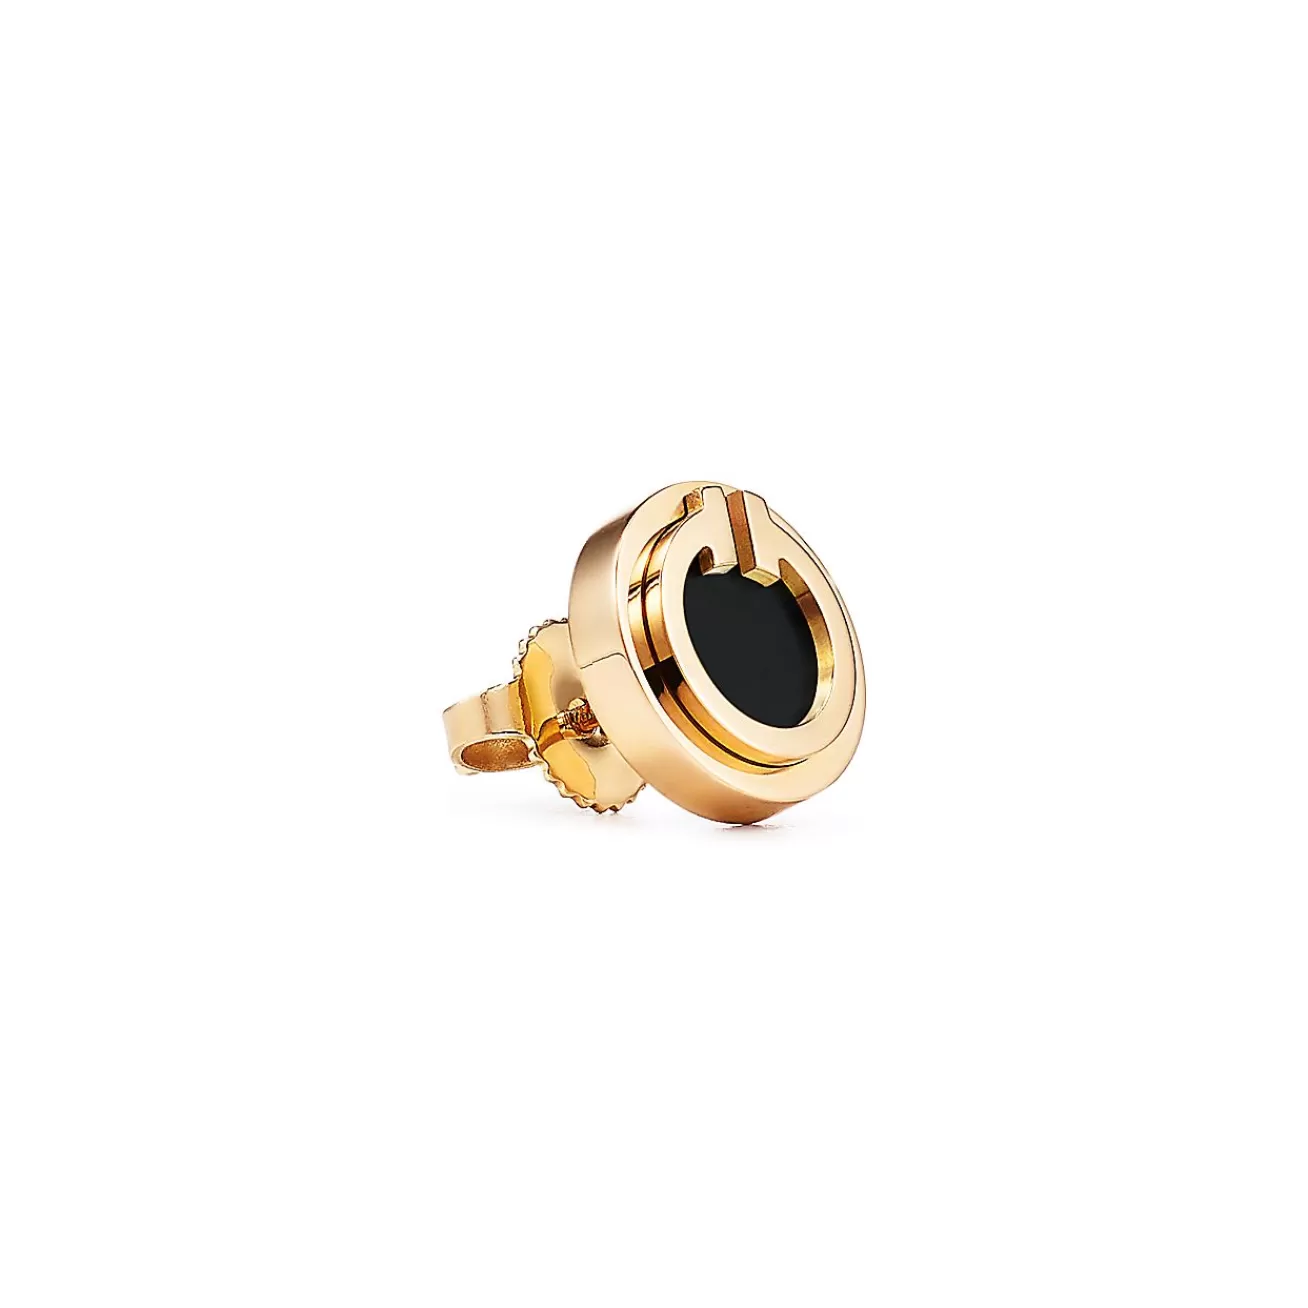 Tiffany & Co. Tiffany T black onyx circle earrings in 18k gold. | ^ Earrings | Gold Jewelry